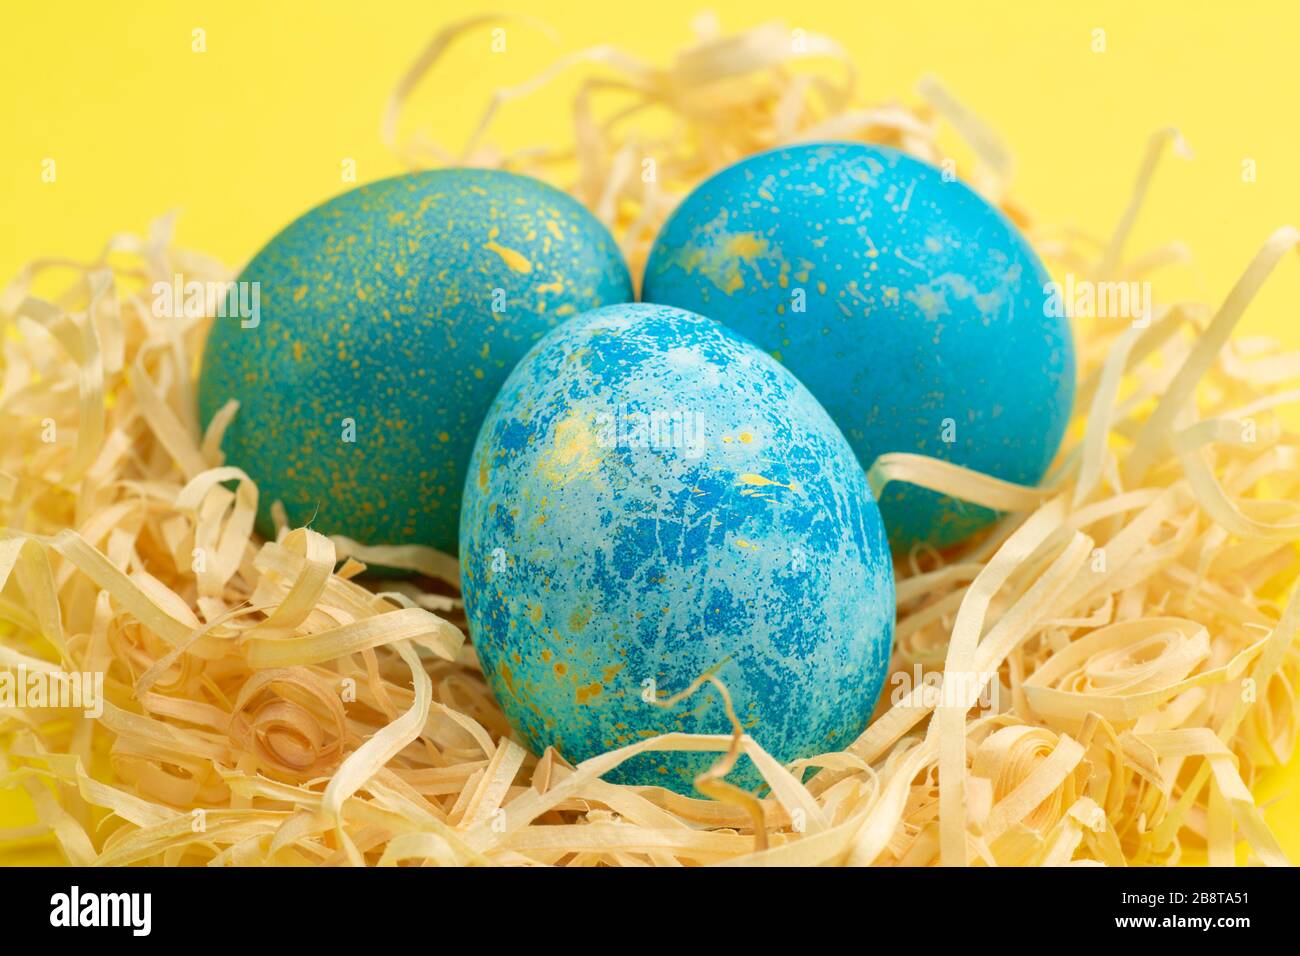 L'oeuf de Pâques peint bleu avec de l'or. L'oeuf se trouve dans un nid de copeaux de bois. Oeuf de pâques peint sur un fond jaune. Gros plan. Banque D'Images